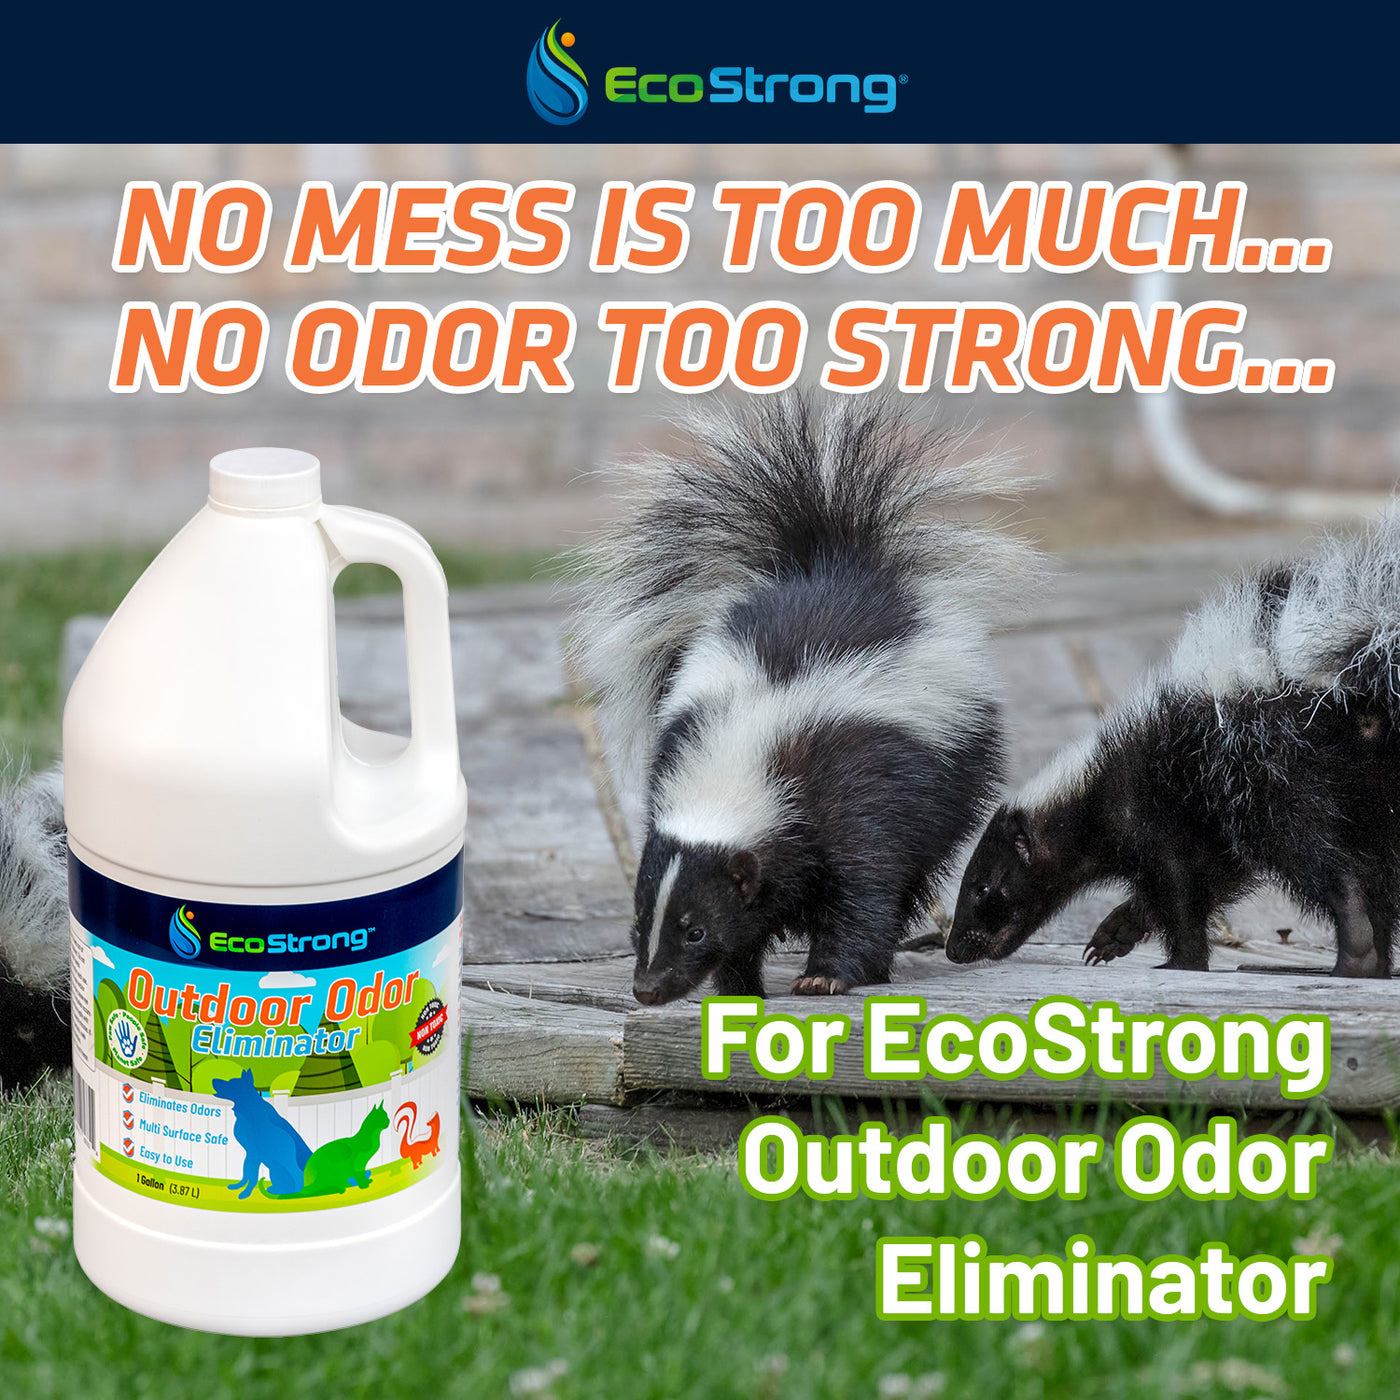 Eco Strong Outdoor Odor Eliminator 1 gallon jug #size_1-gallon-jug